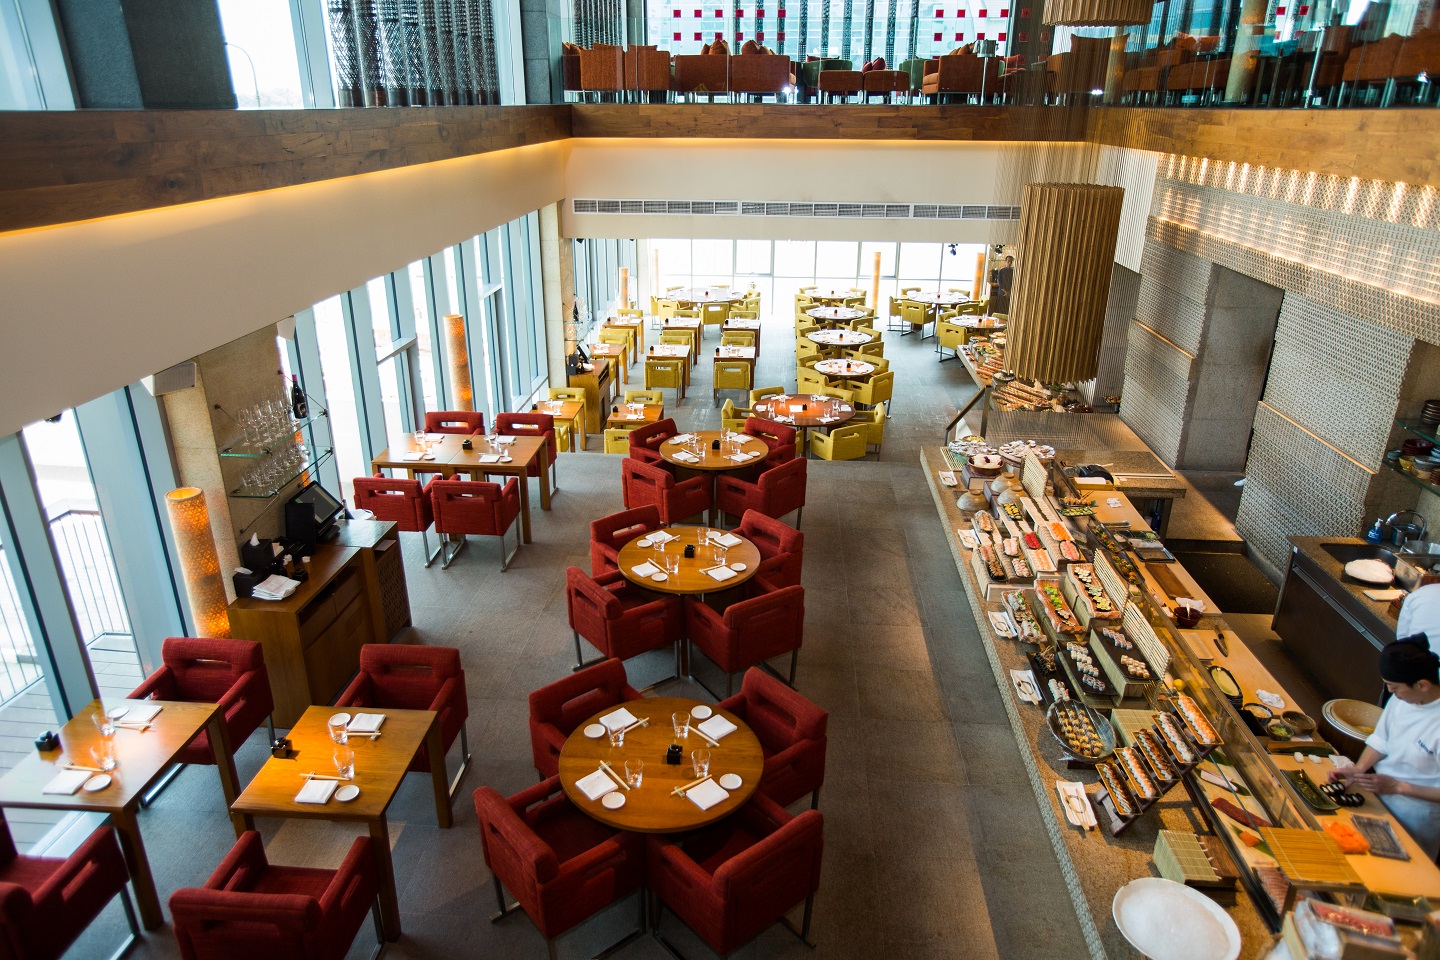 Zuma, Dubai - Get Zuma Restaurant Reviews on Times of India Travel